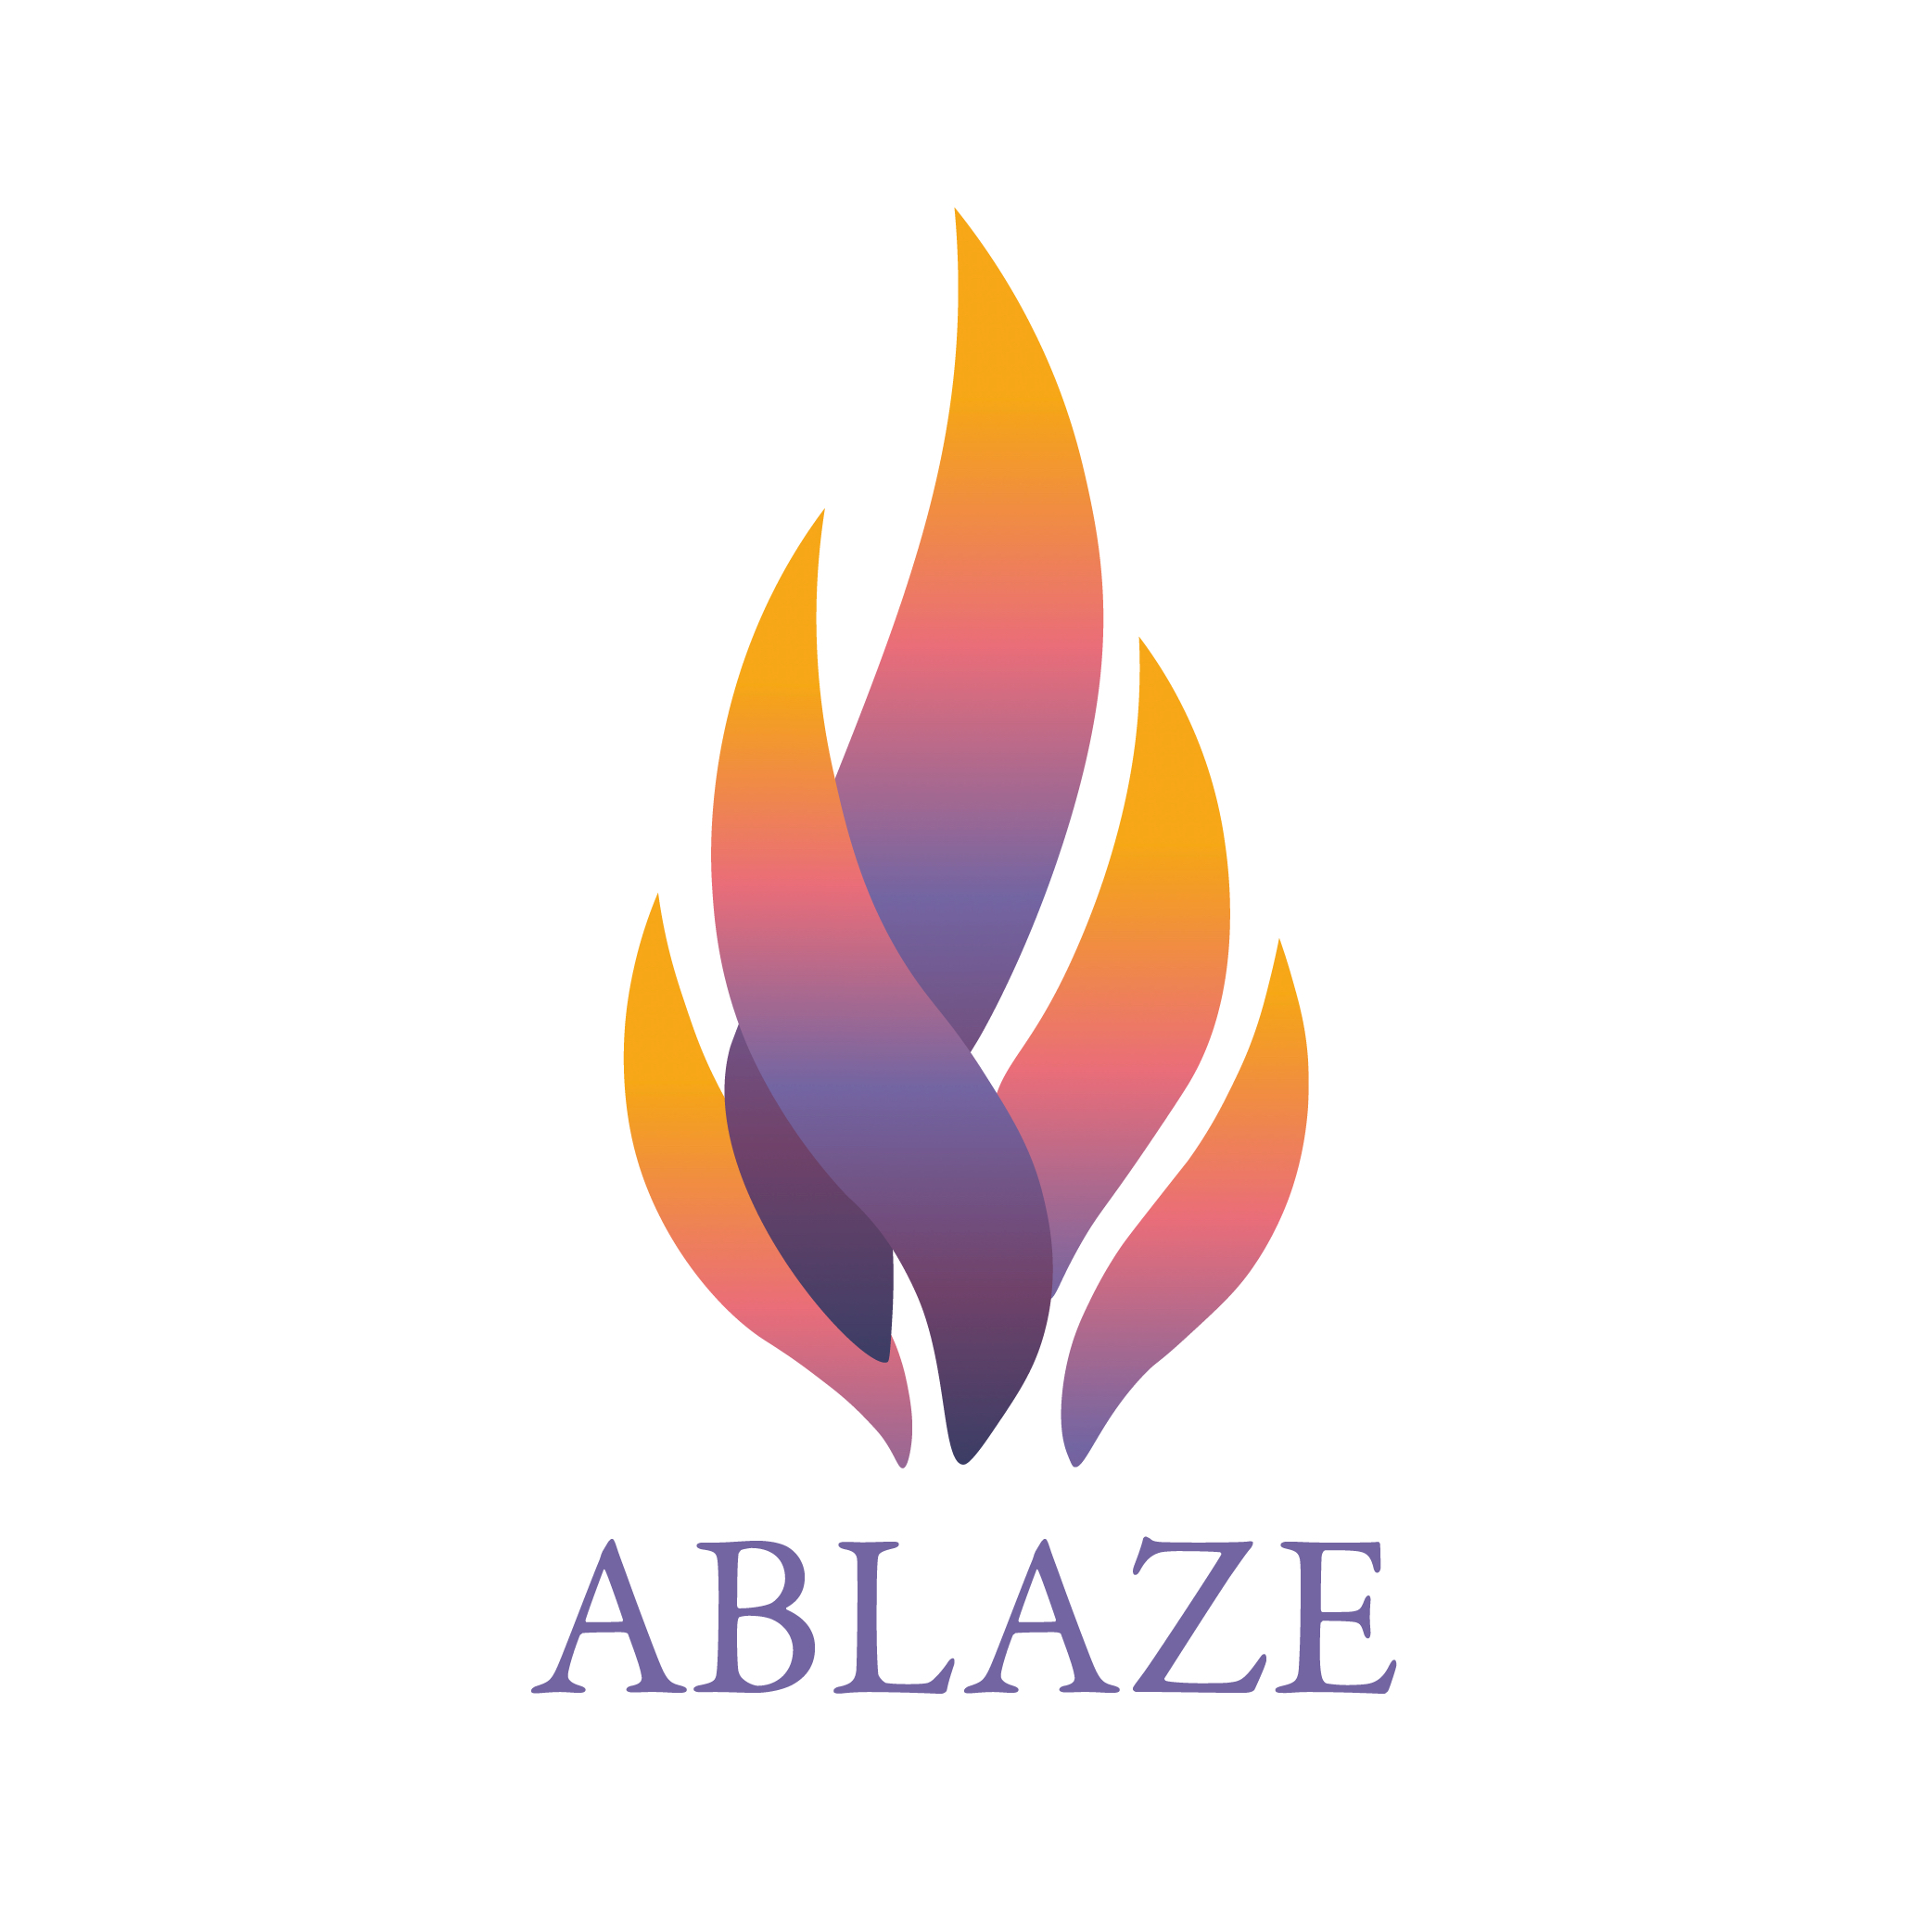 Ablaze-Stickers-01